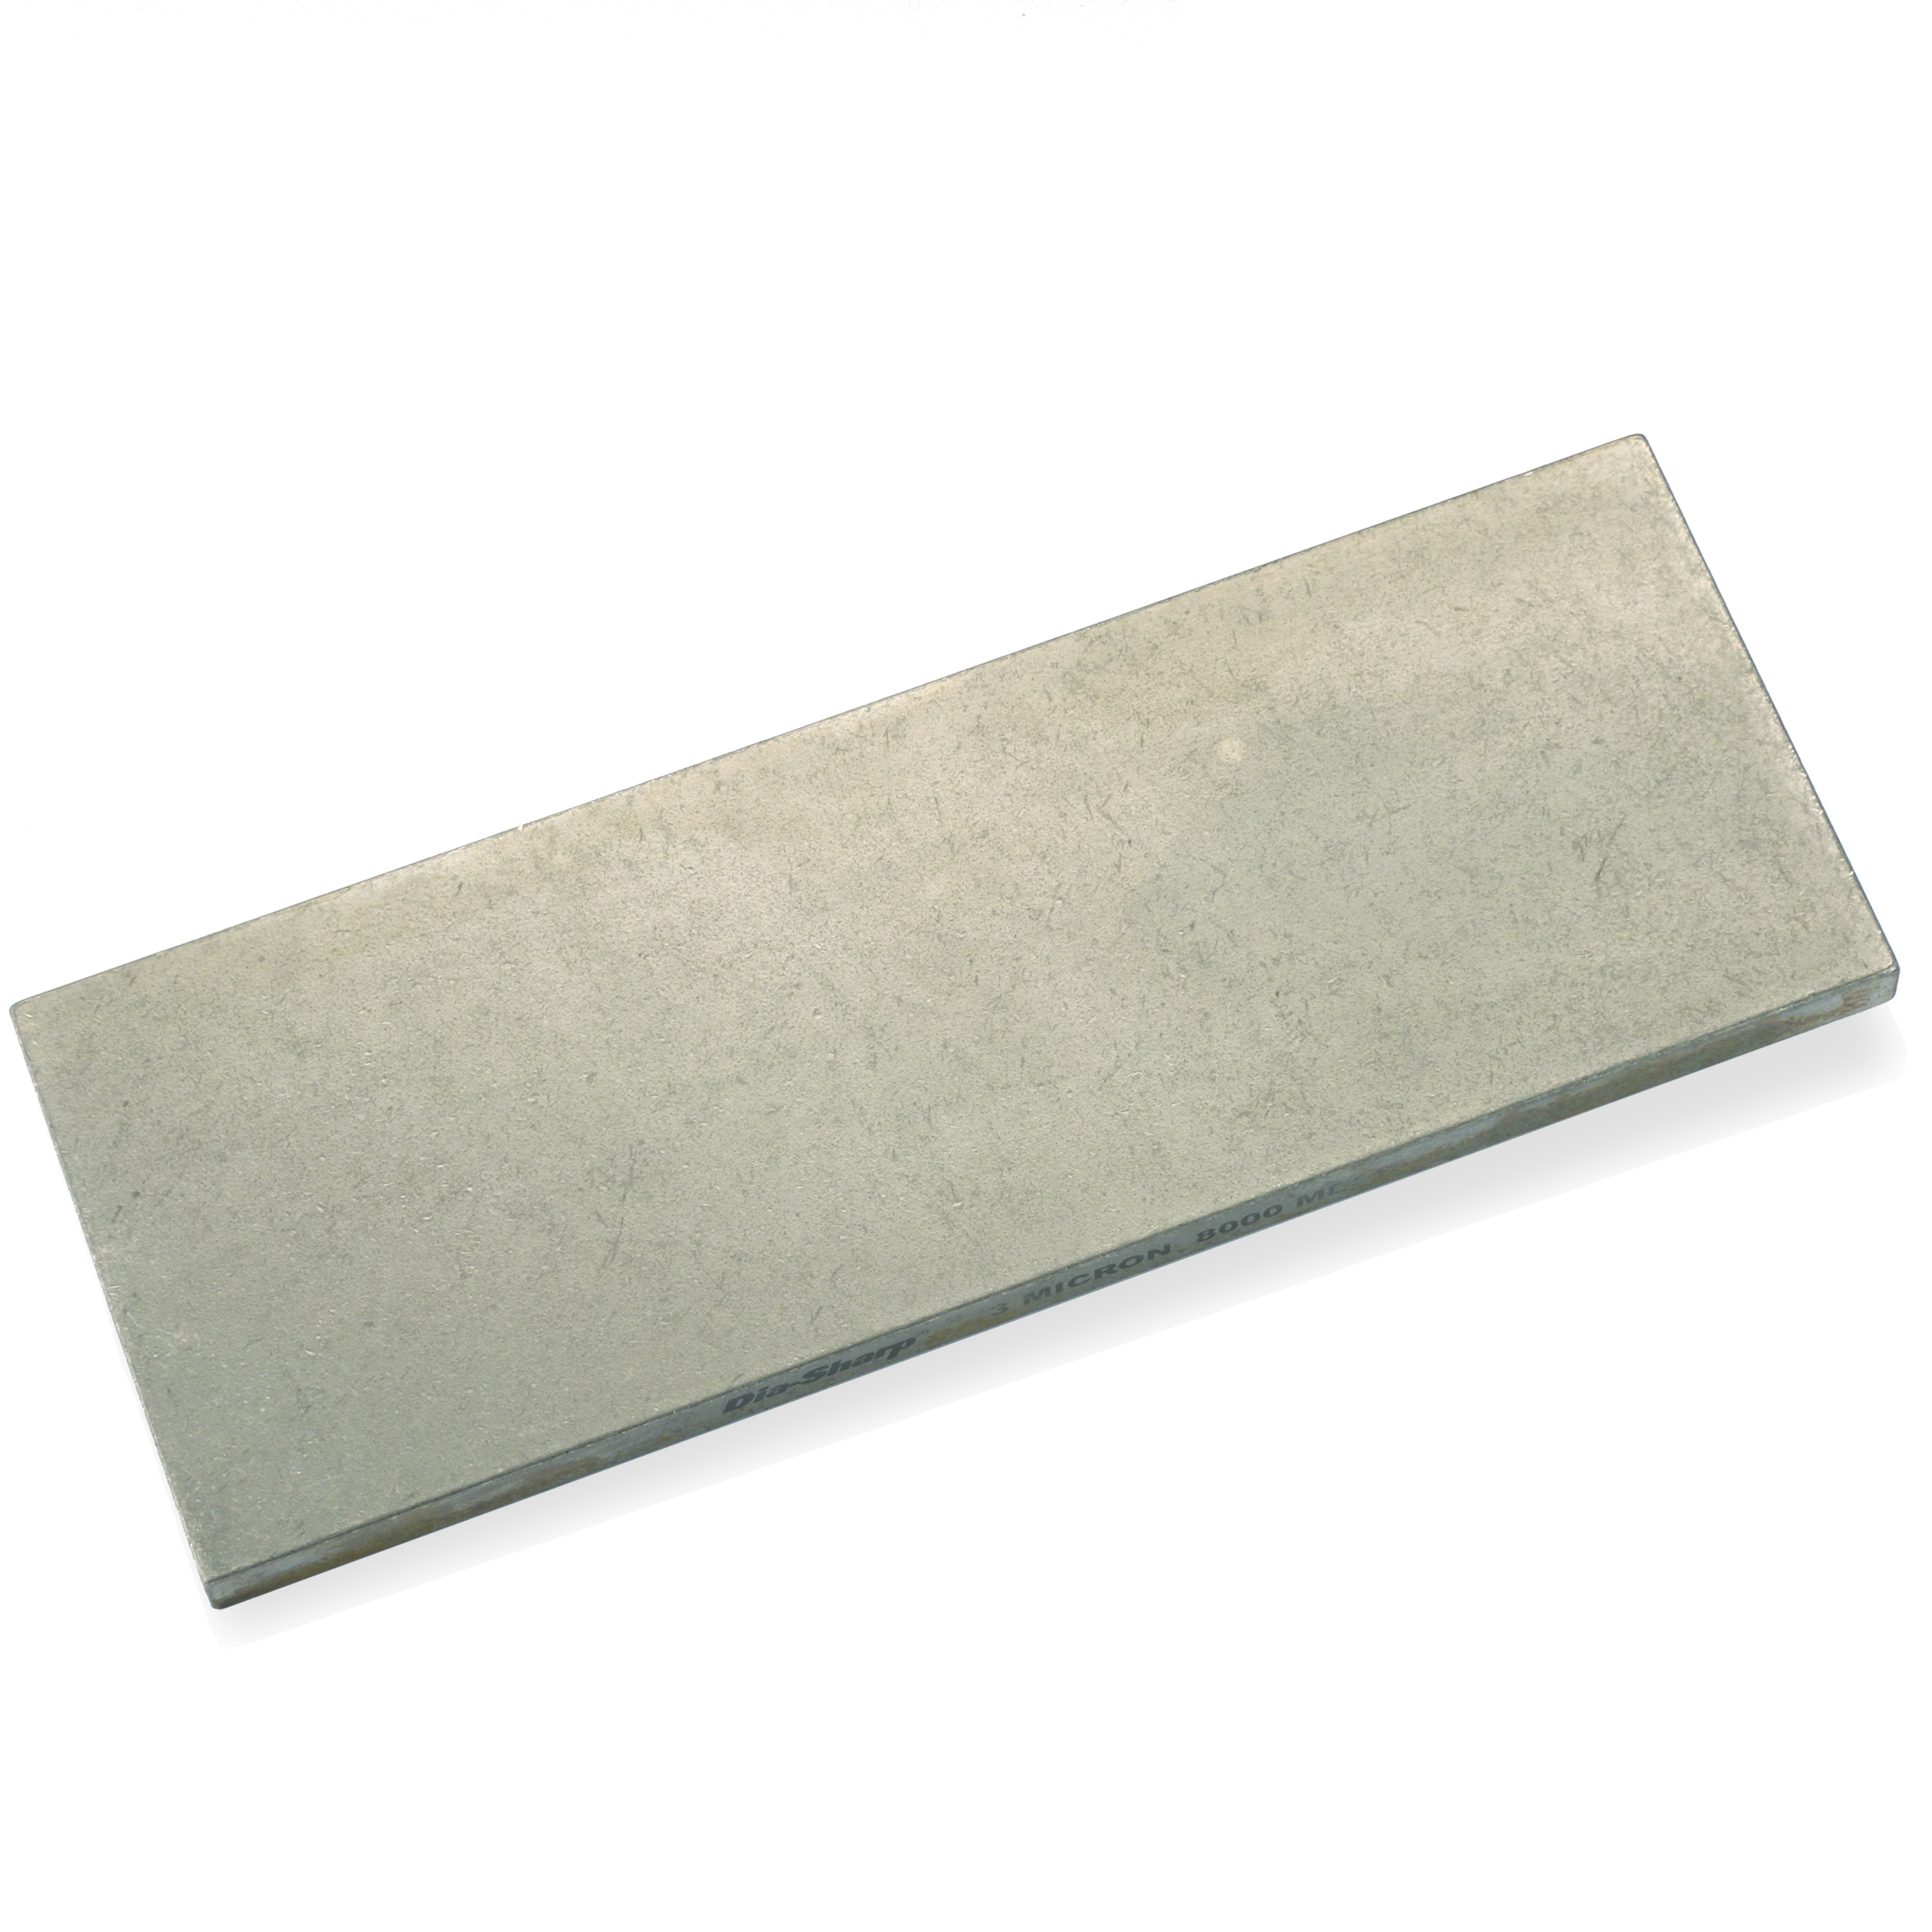 Dia-sharp, 8" X 3" Bench Stone, Extra-extra-fine